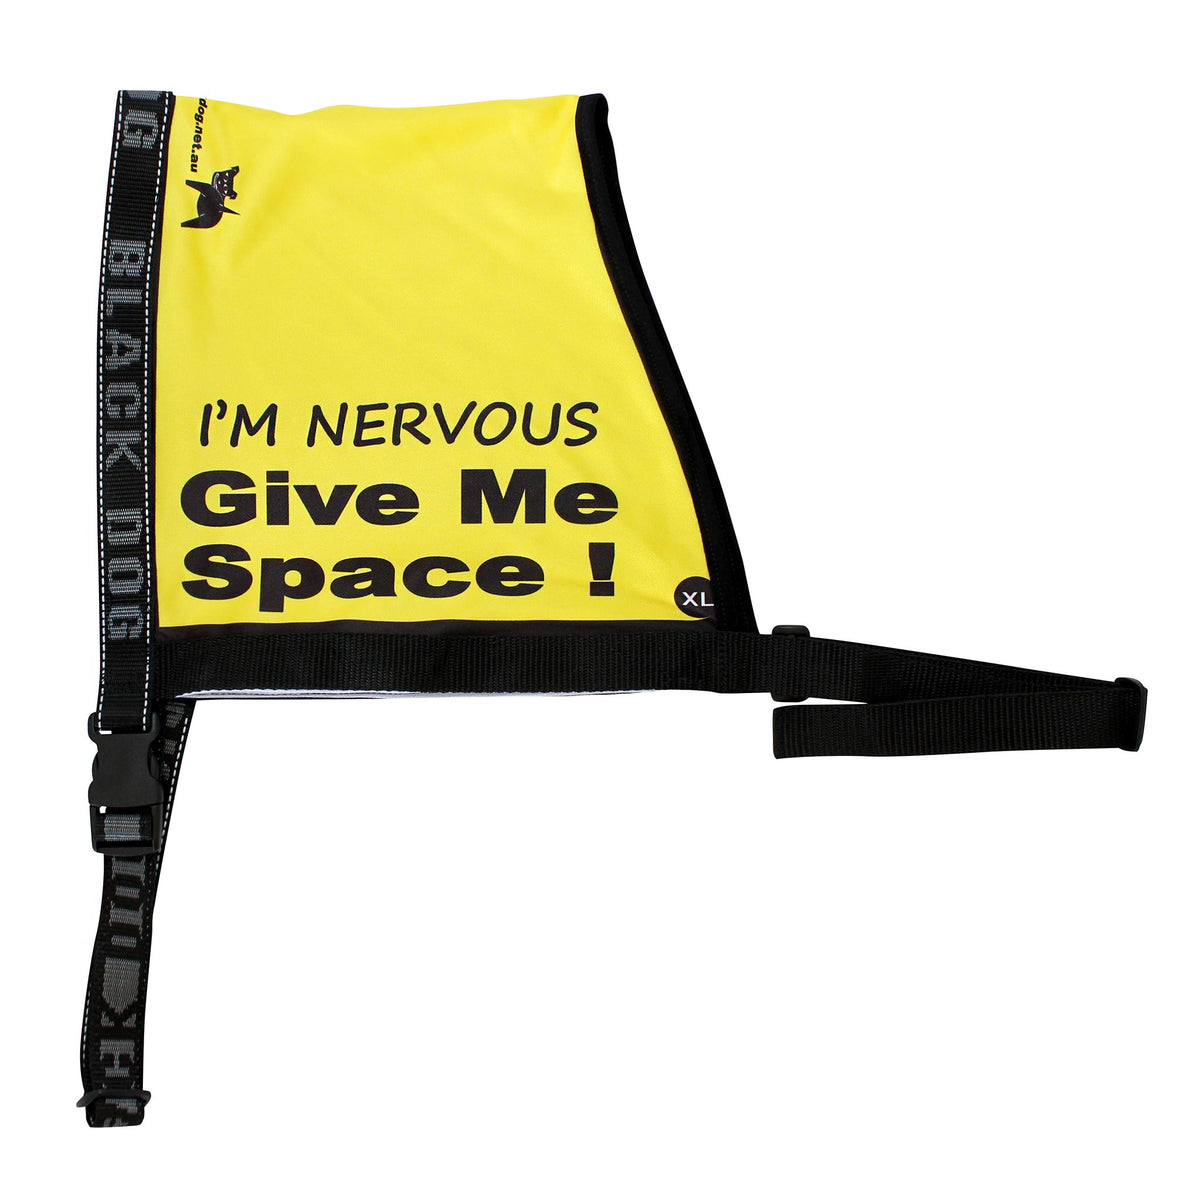 Black Dog Wear Give Me Space Vest